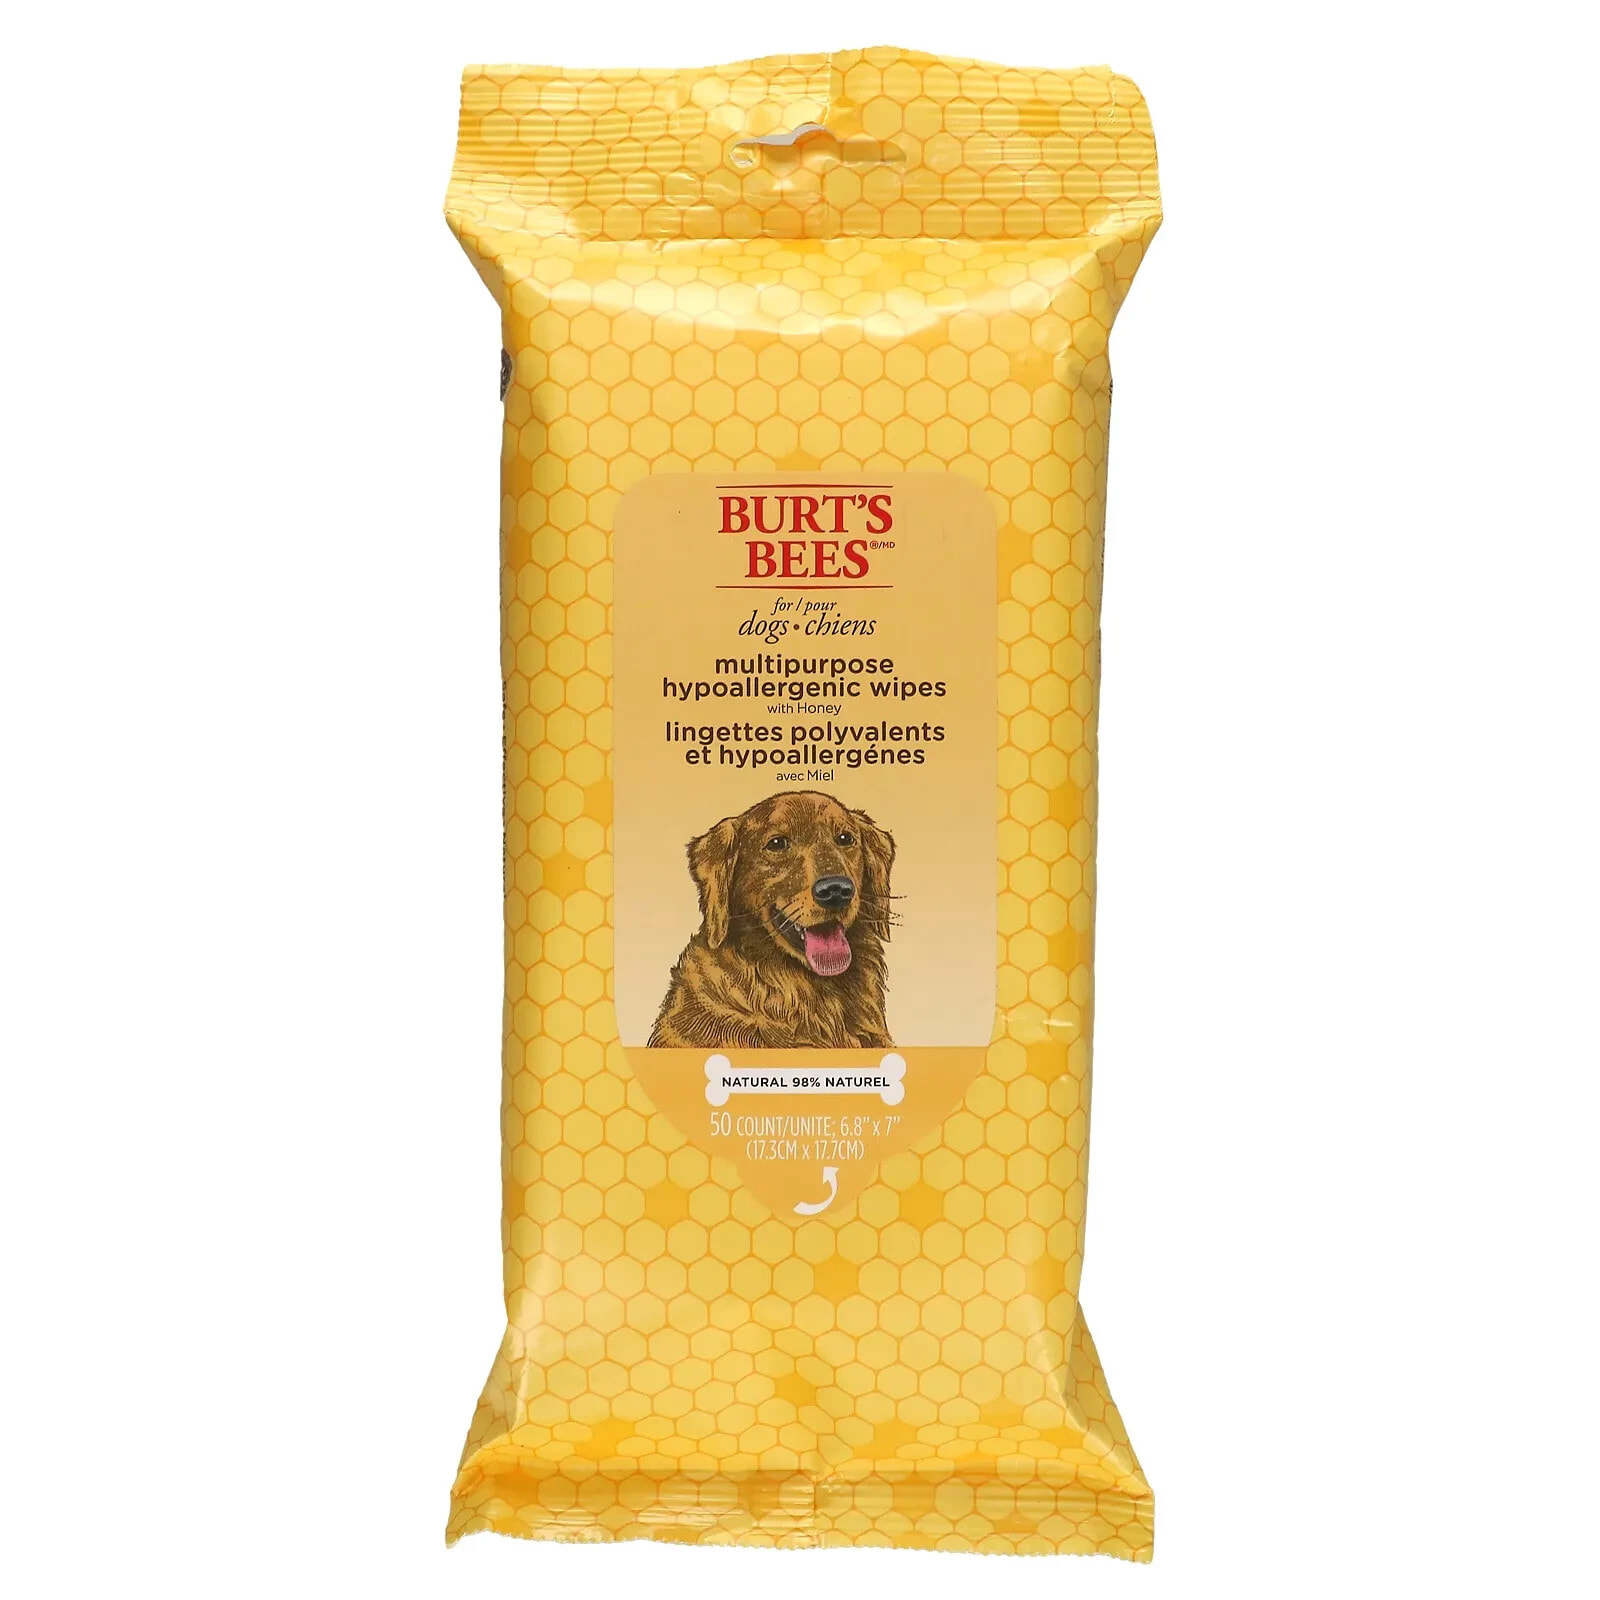 Бартс Бис, Универсальные гипоаллергенные салфетки для собак с медом, 50 шт.